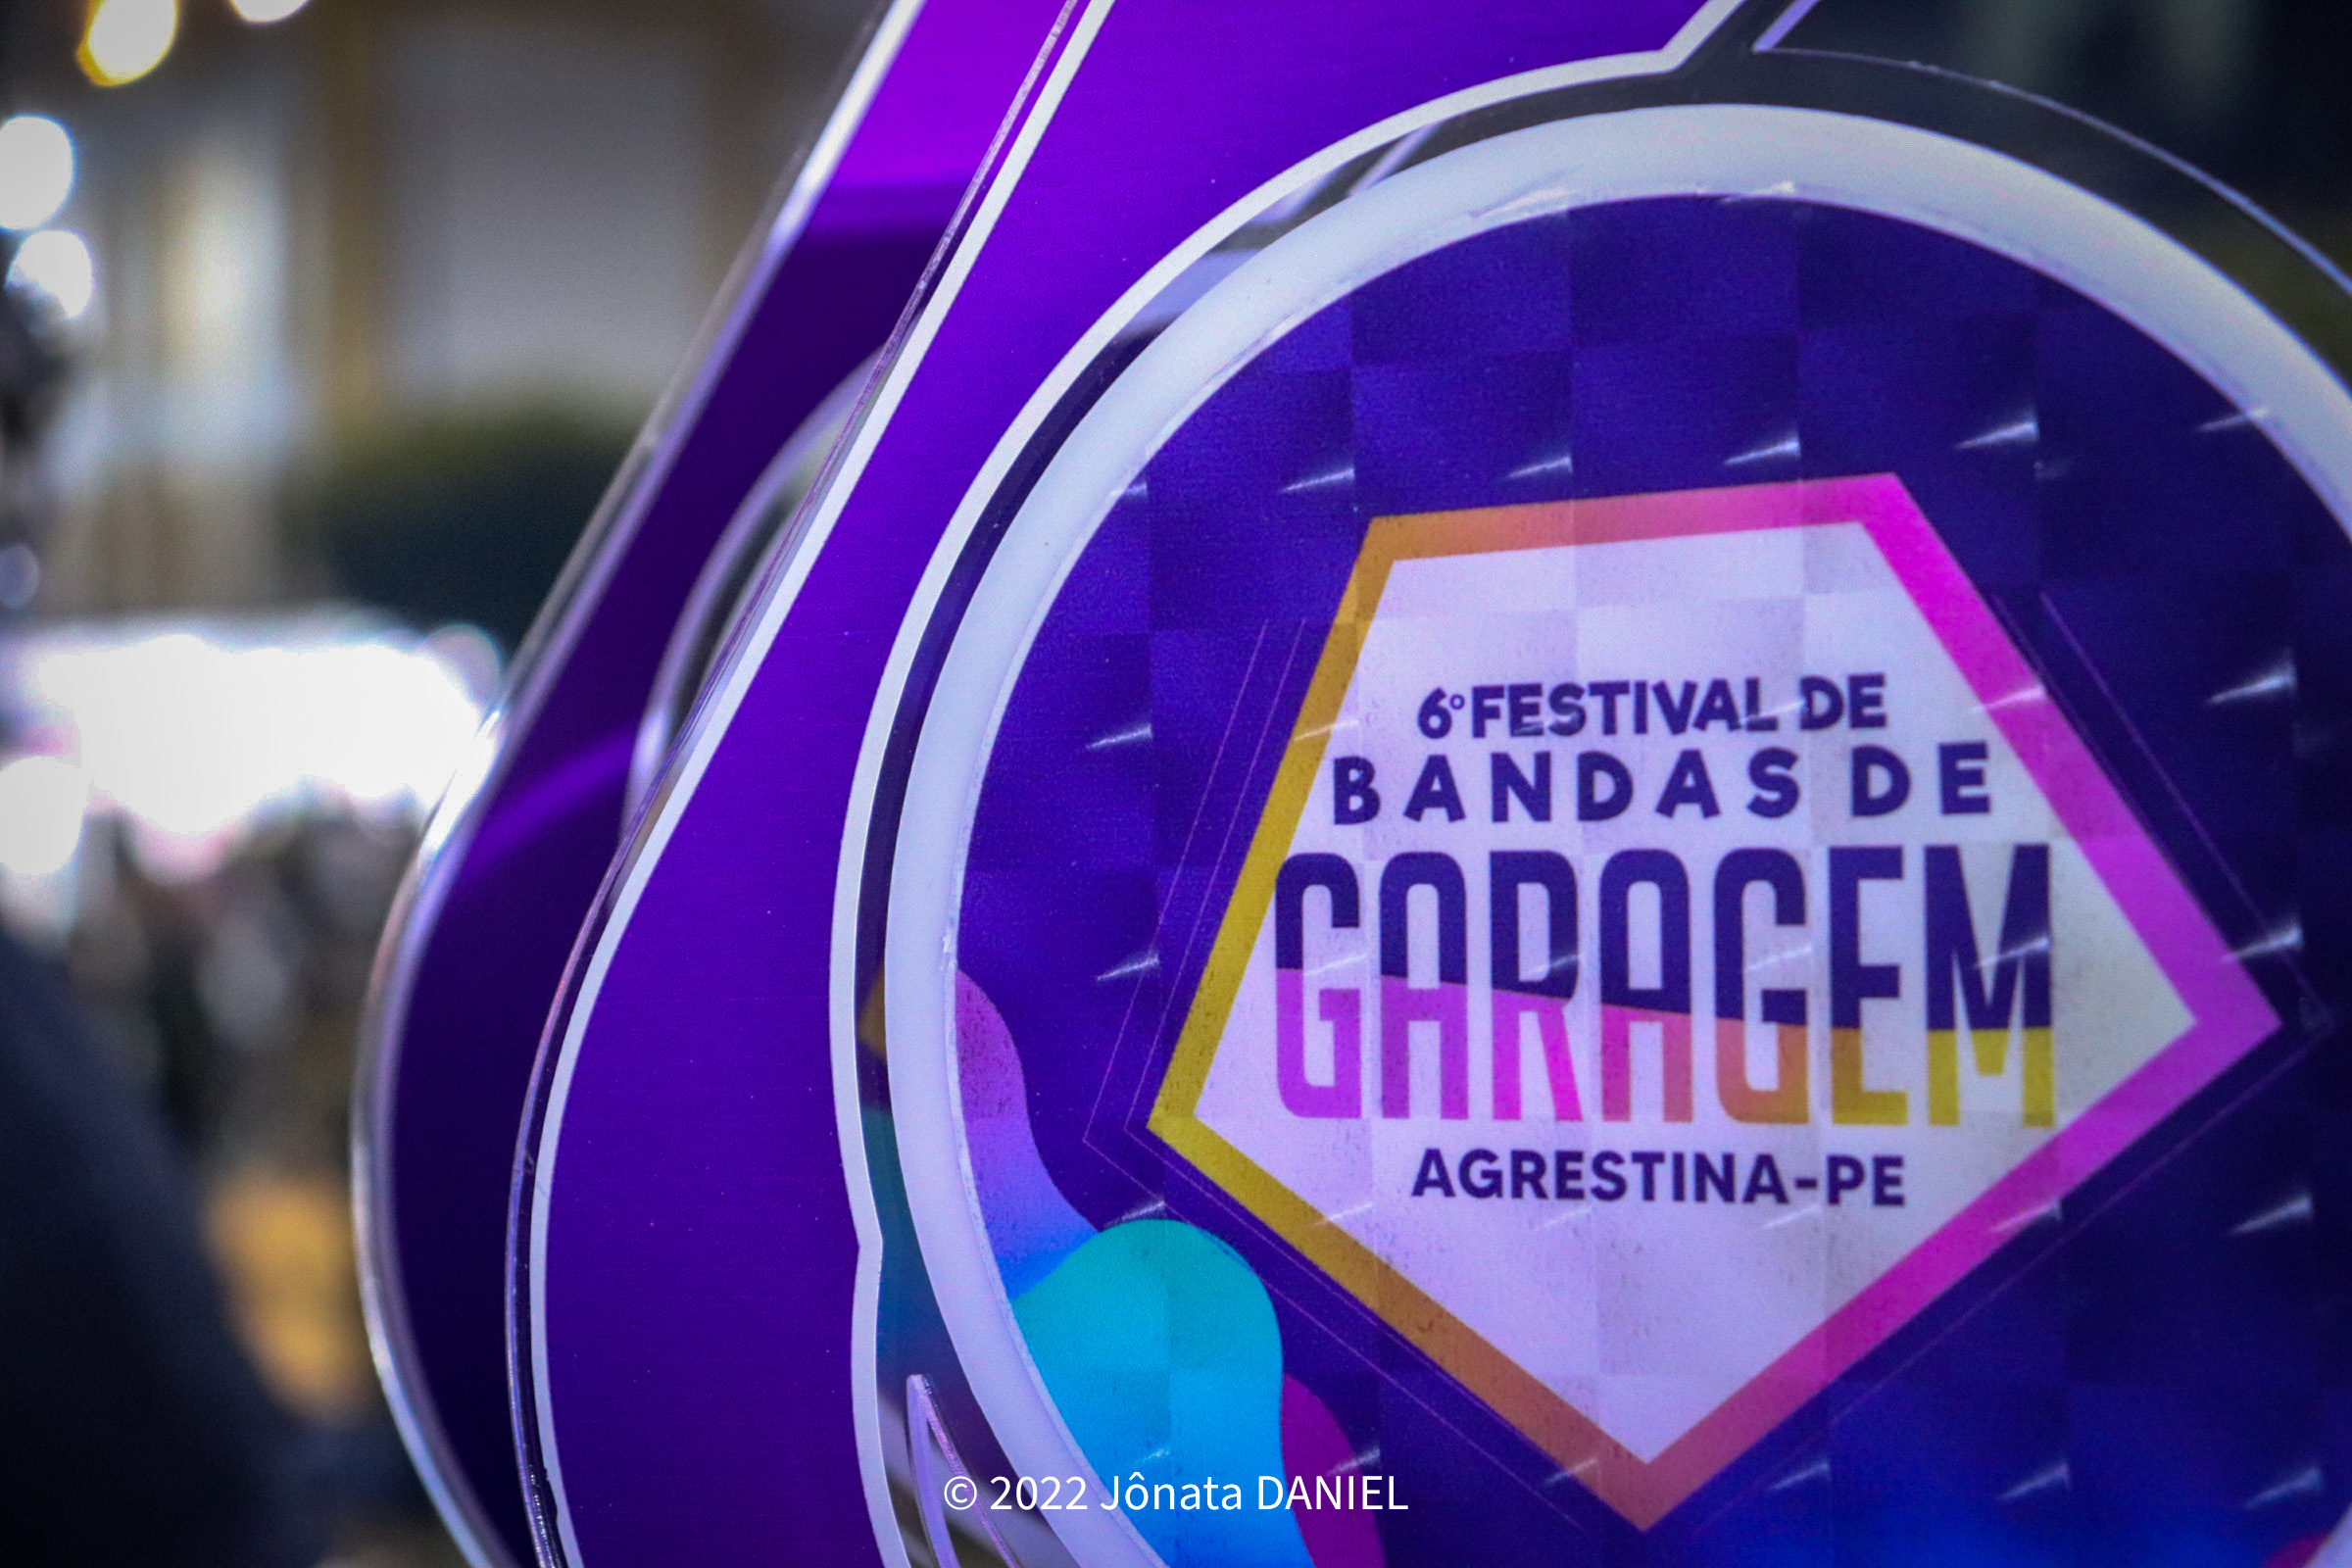  Agrestina realiza 6º Festival de Bandas de Garagem